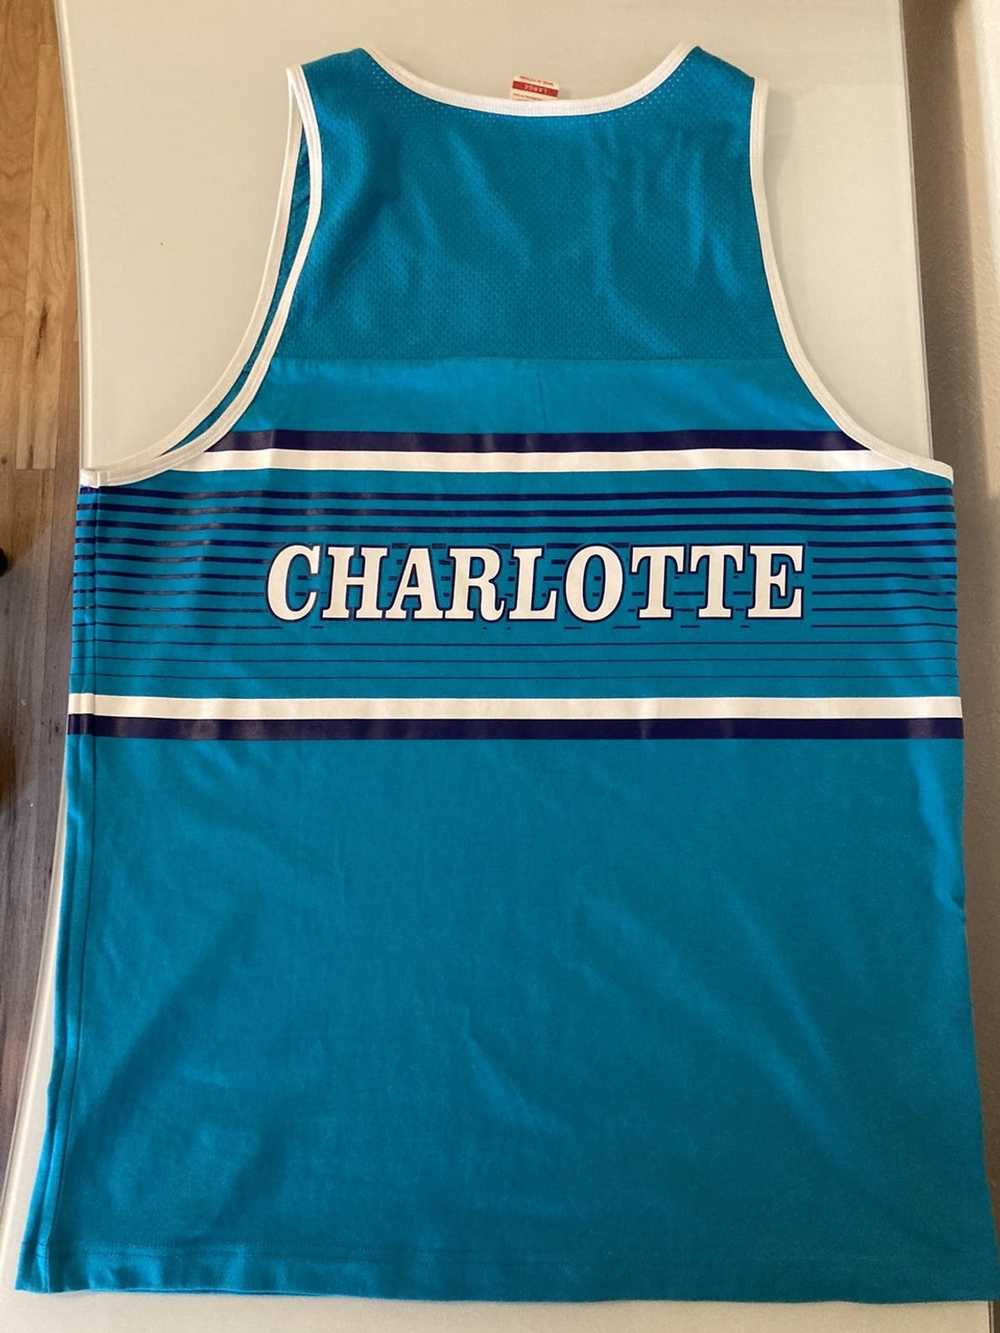 VN Design - Charlotte Hornets jersey concept 🟡⚫️ #VNdesign